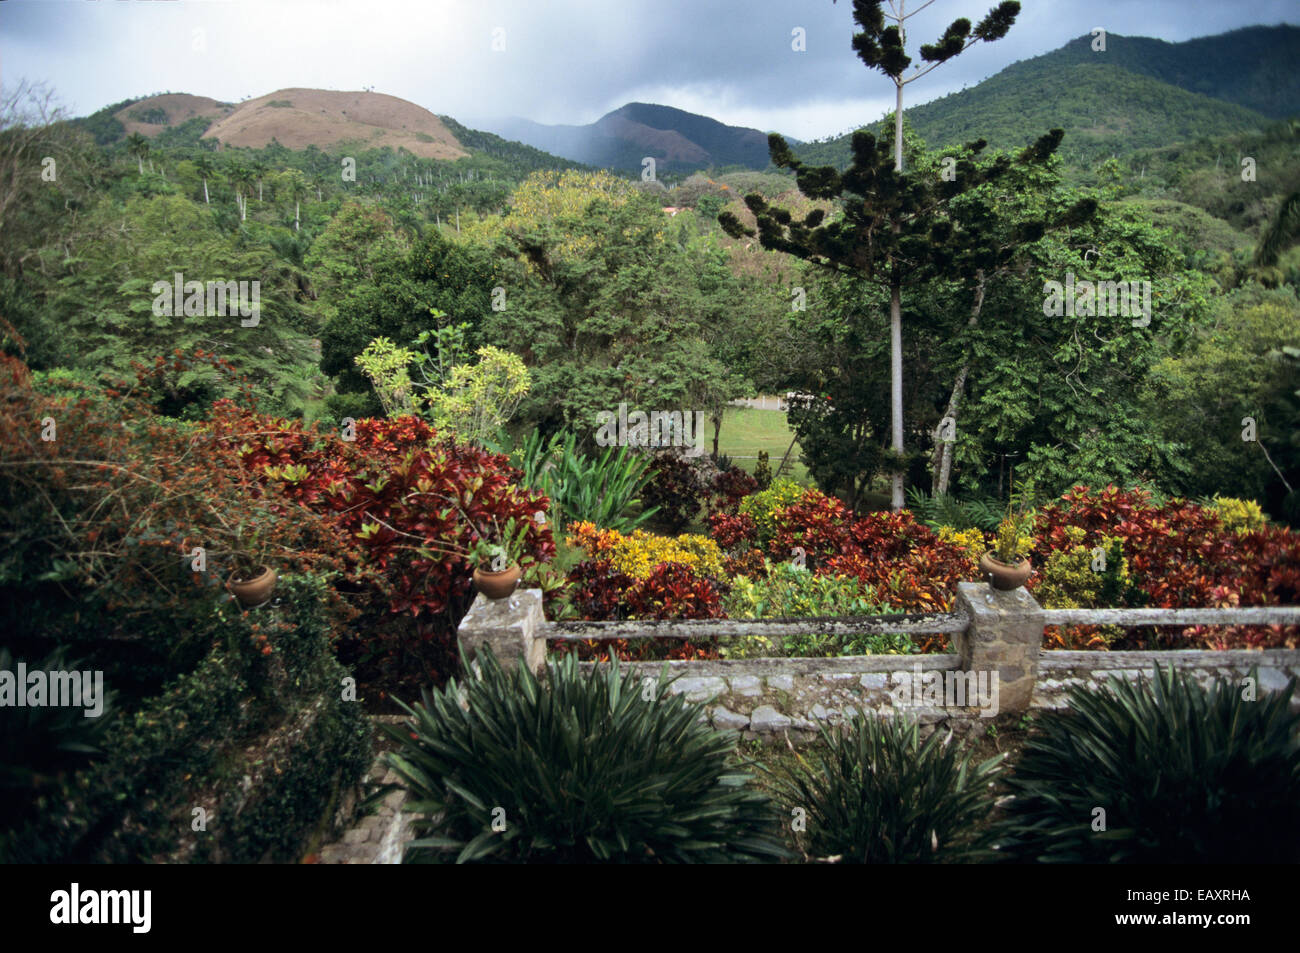 View of Sierra del Rosario (Rosario Mountain) from the Botanic Garden at Soroa, Pinar del Rio, Cuba, Caribbean Islands Stock Photo